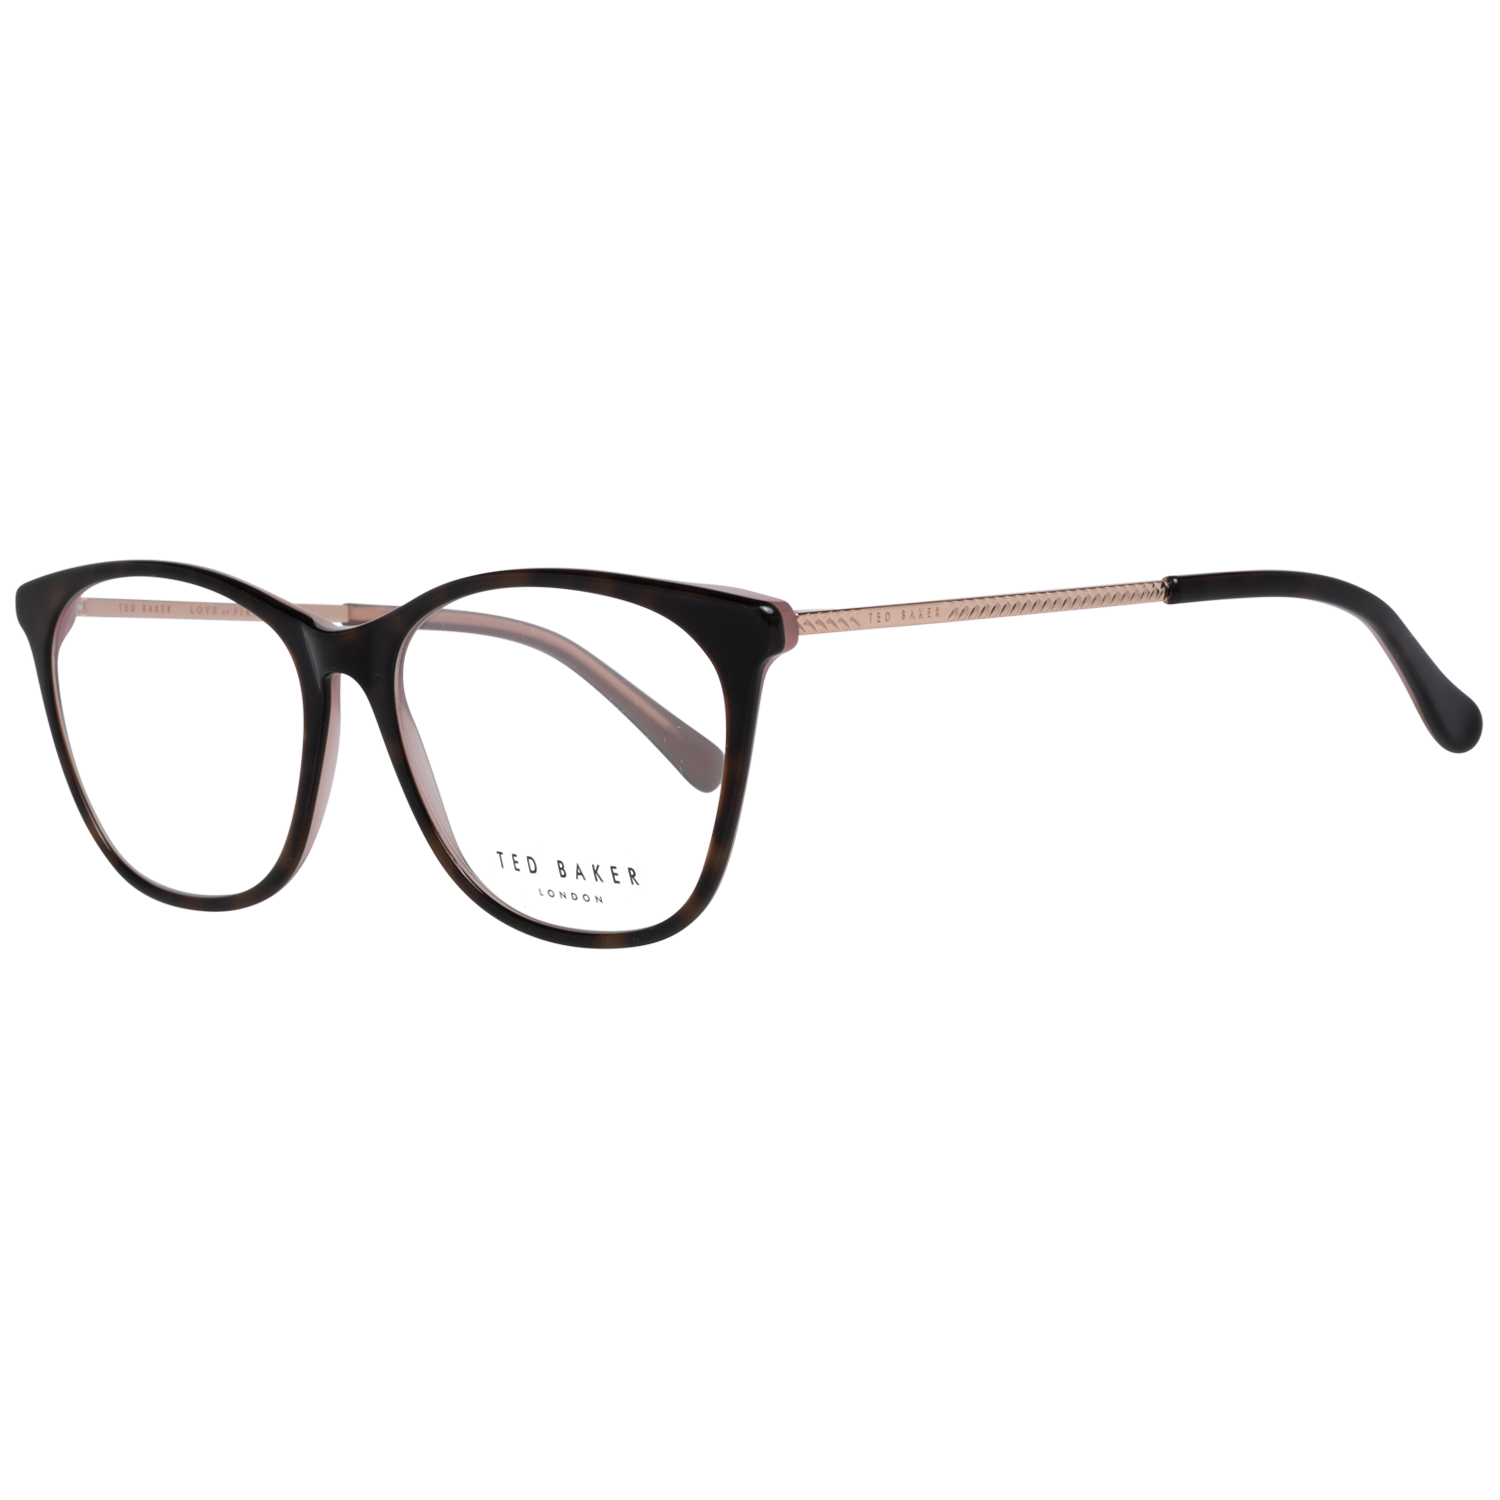 Ted Baker Frames Ted Baker Optical Frame Prescription Glasses TB9184 219 53 Rayna Eyeglasses Eyewear UK USA Australia 